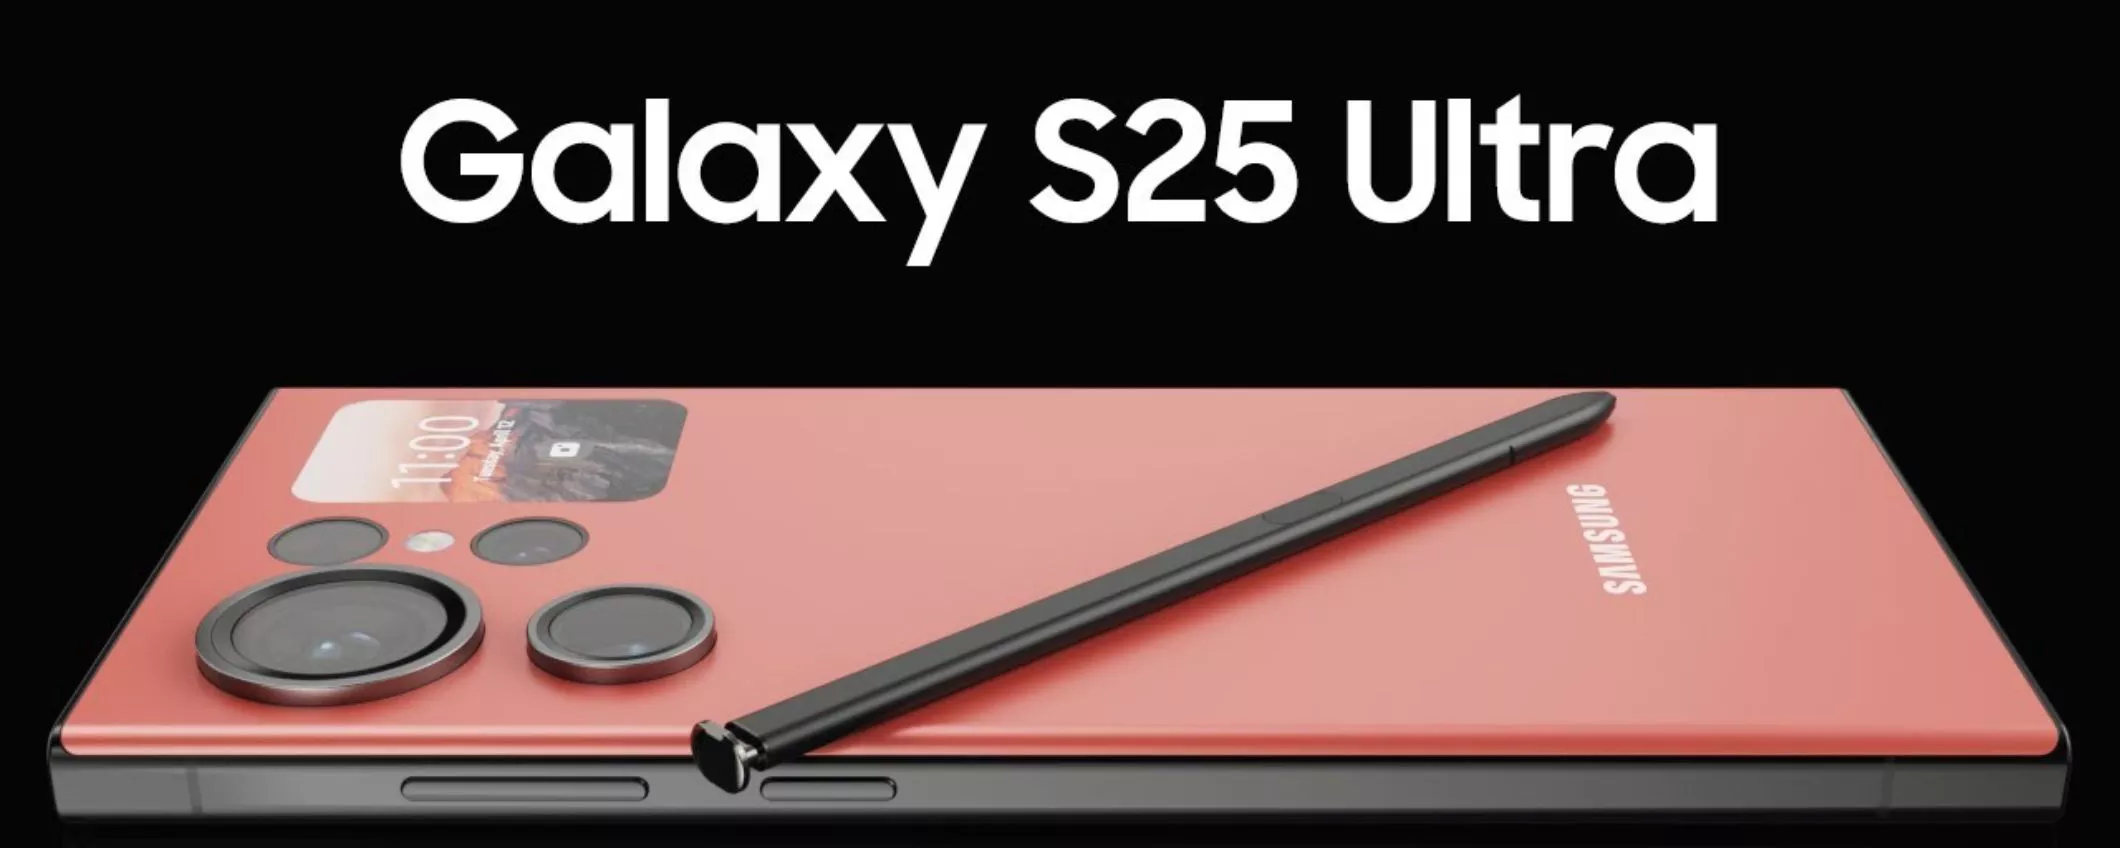 Samsung Galaxy S25 Ultra: finalmente rinnovato il comparto fotografico